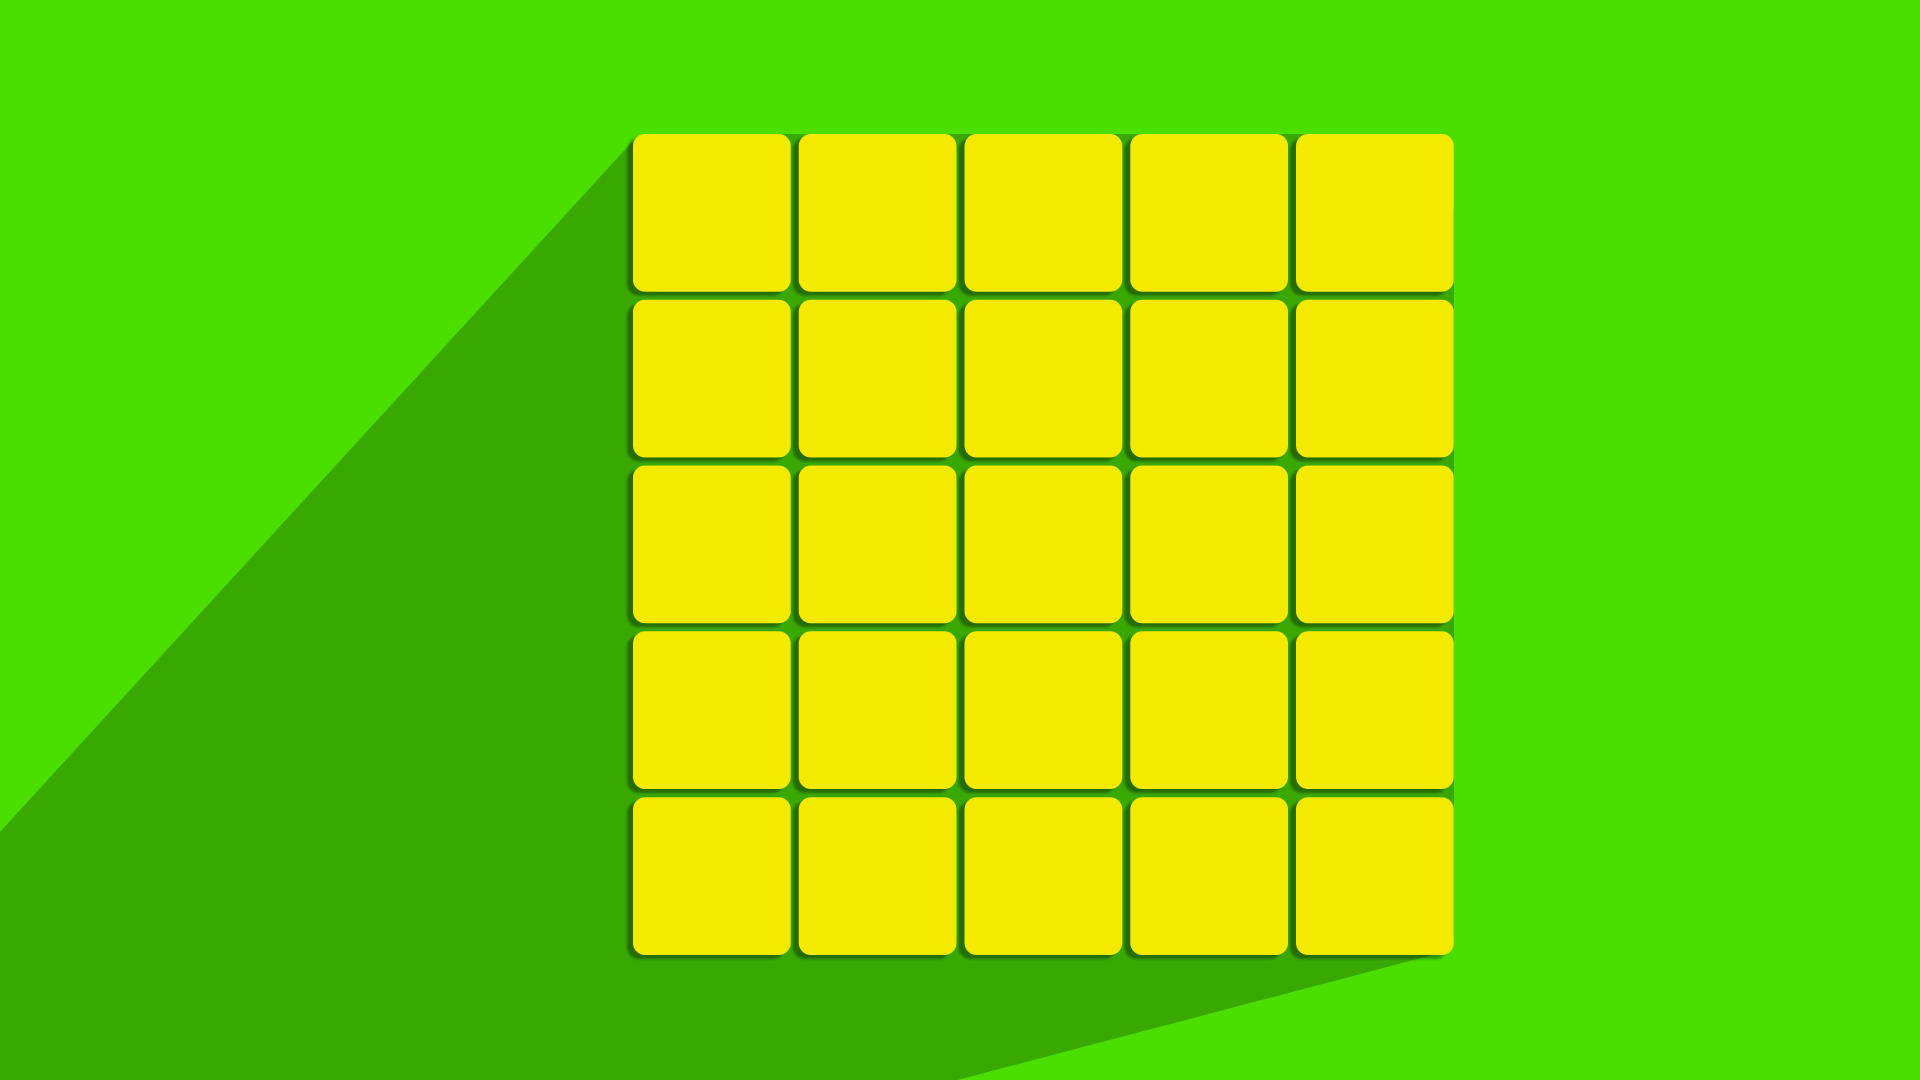 Beginner's Method for Solving the 5x5 Cube